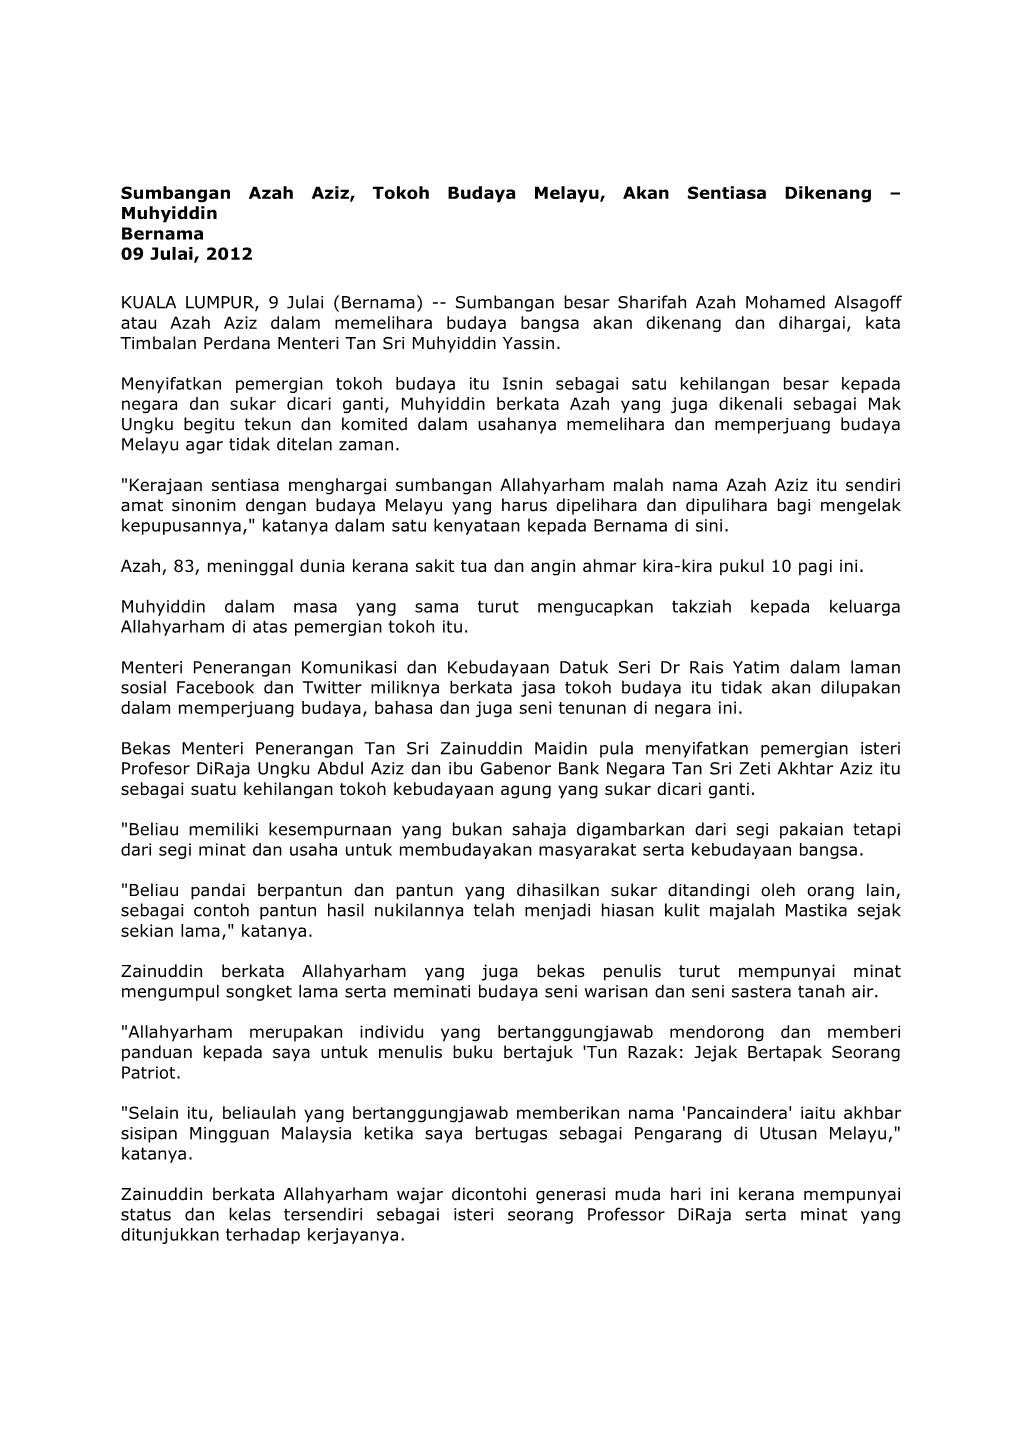 Sumbangan Azah Aziz, Tokoh Budaya Melayu, Akan Sentiasa Dikenang – Muhyiddin Bernama 09 Julai, 2012